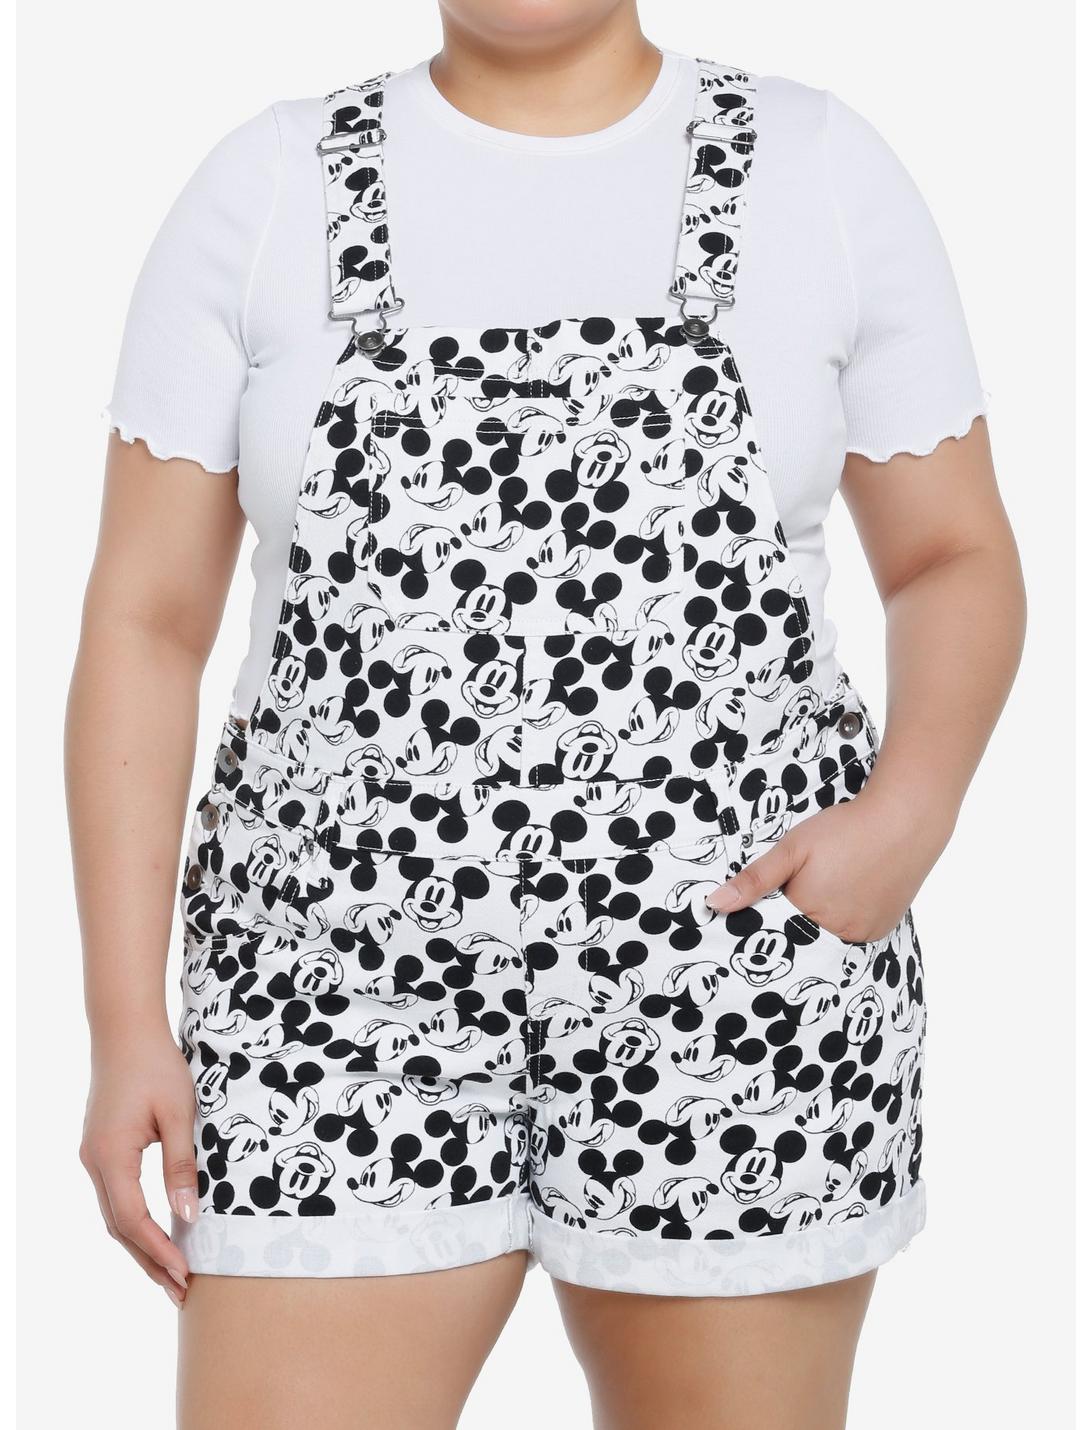 Disney Mickey Mouse Black & White Shortalls Plus Size, BLACK  WHITE, hi-res